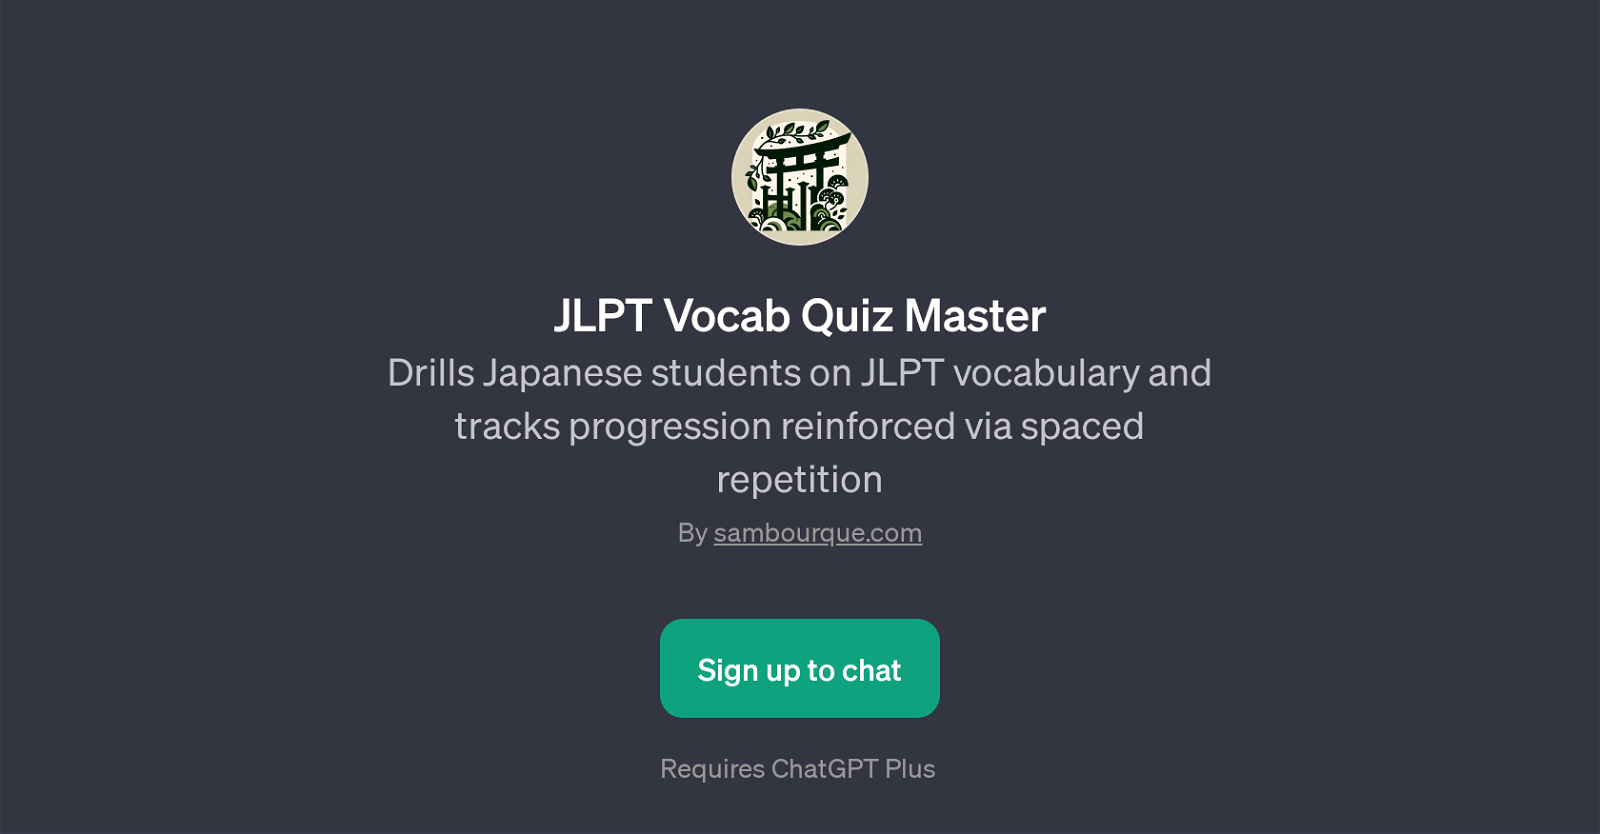 JLPT Vocab Quiz Master website